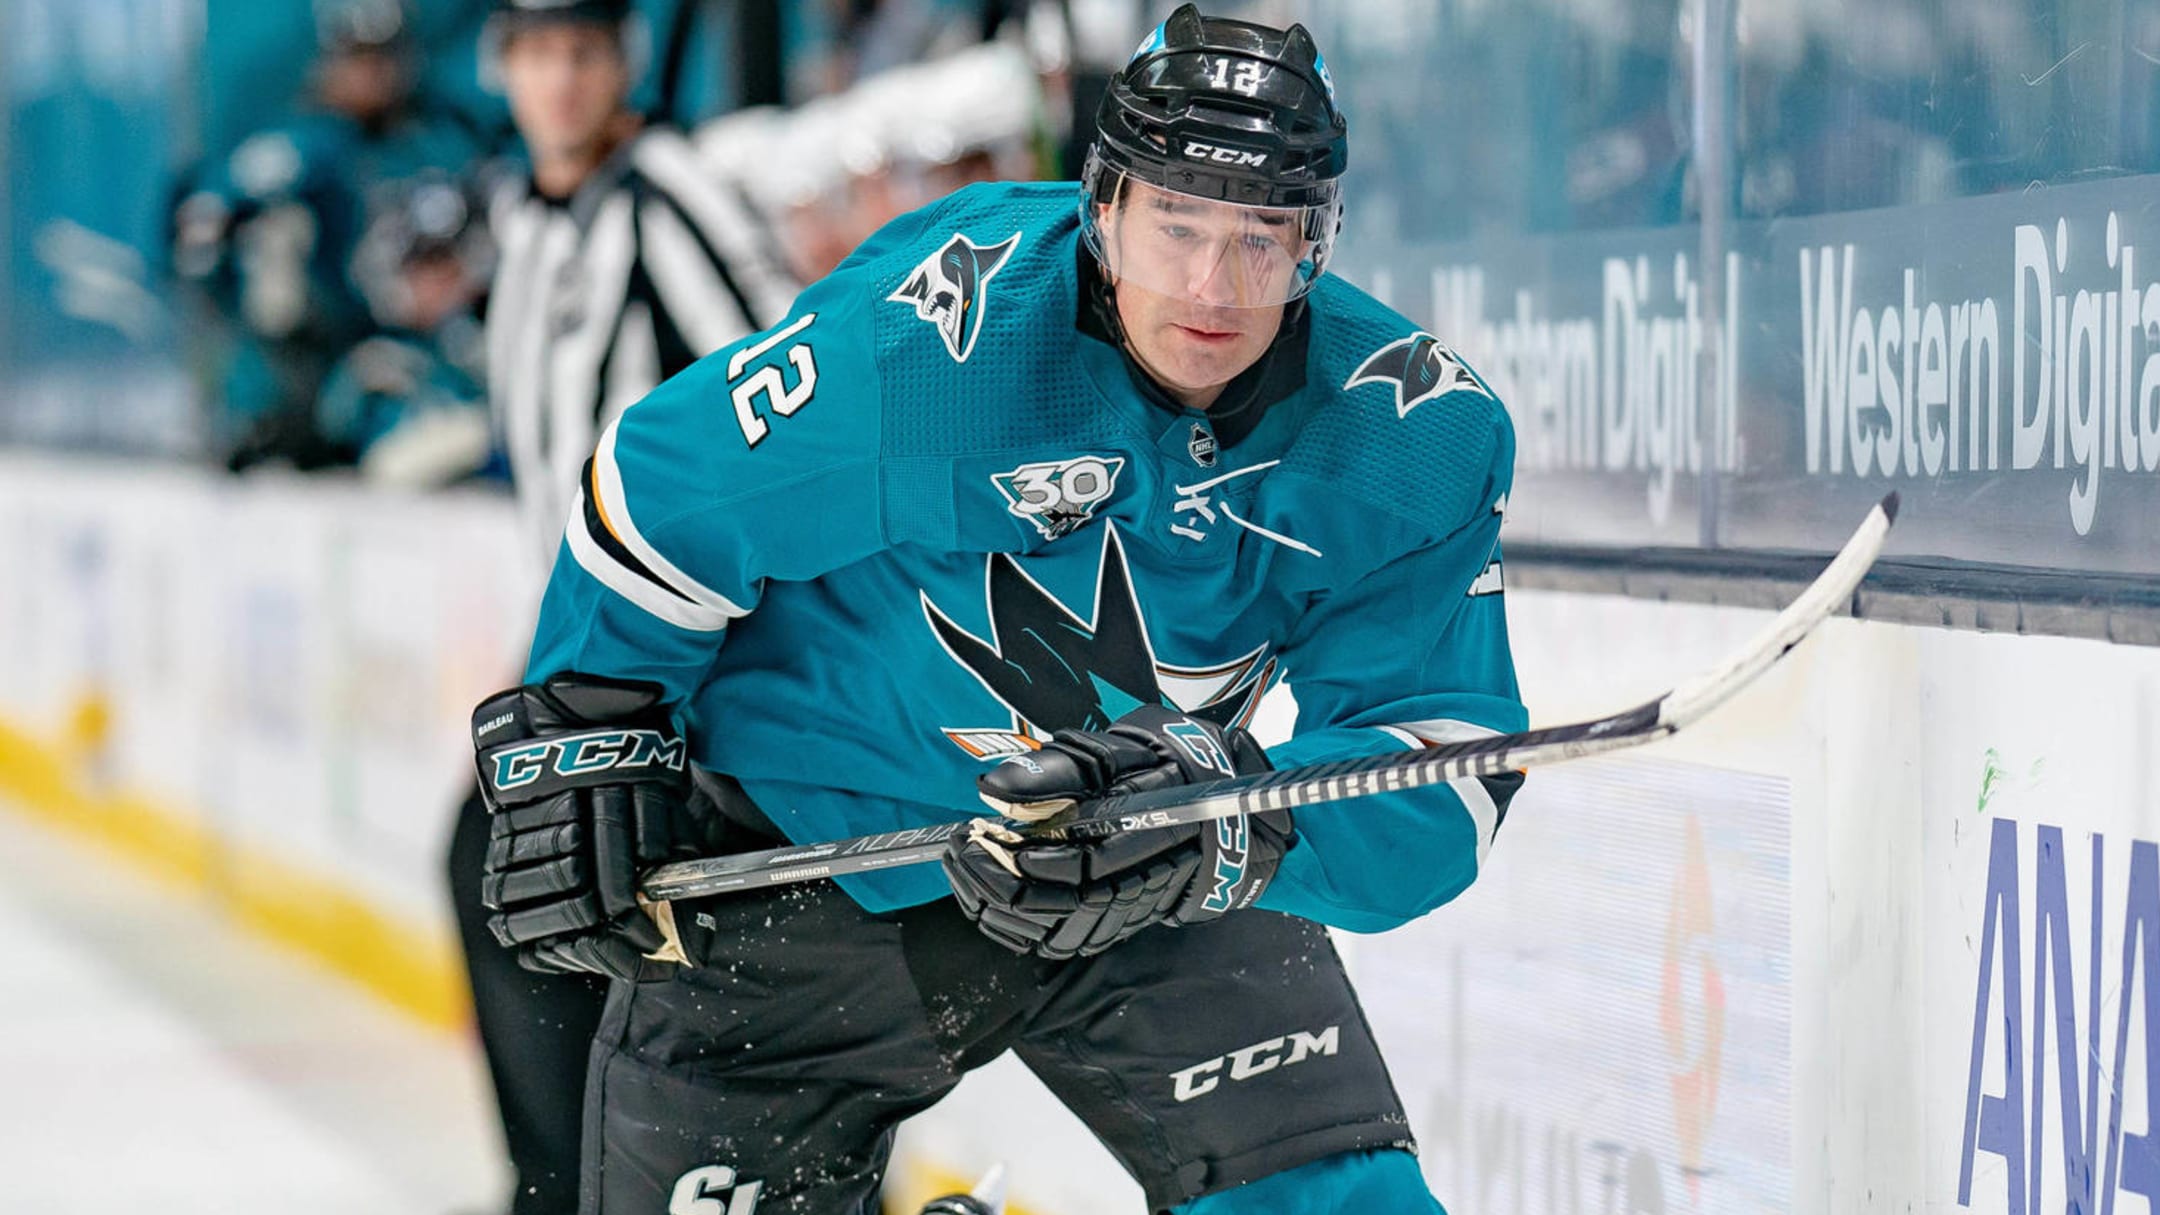 Sharks send Patrick Marleau to Penguins for shot at 1st Stanley Cup - ESPN